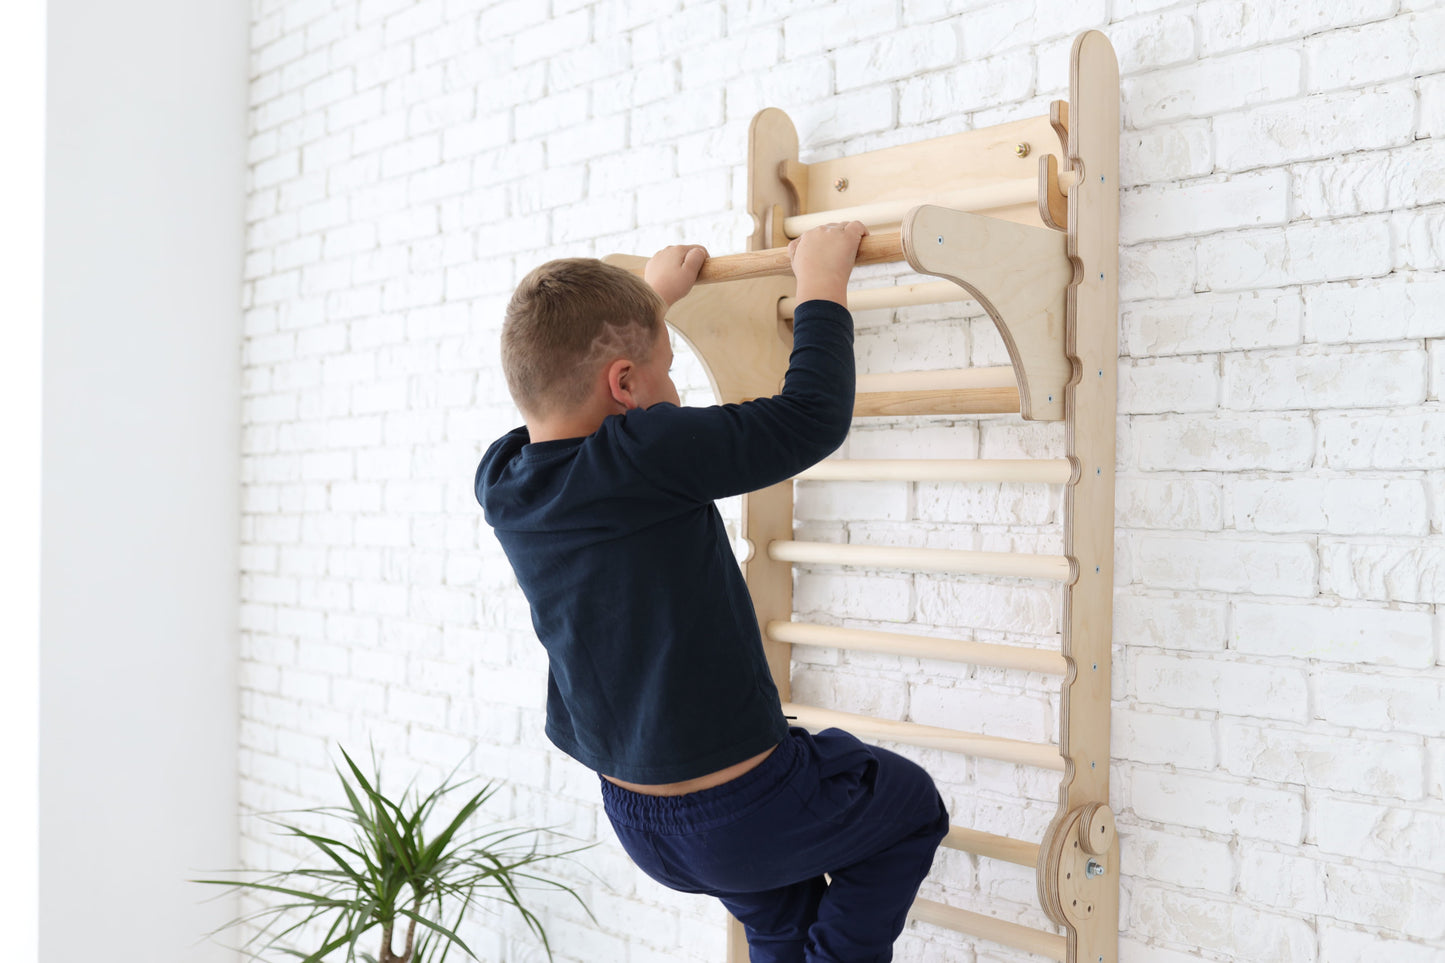 5in1: Schwedische Wand / Sprossenwand Aus Holz Für Kinder + Schaukel-Set + Rutsche + Kunst Add-On